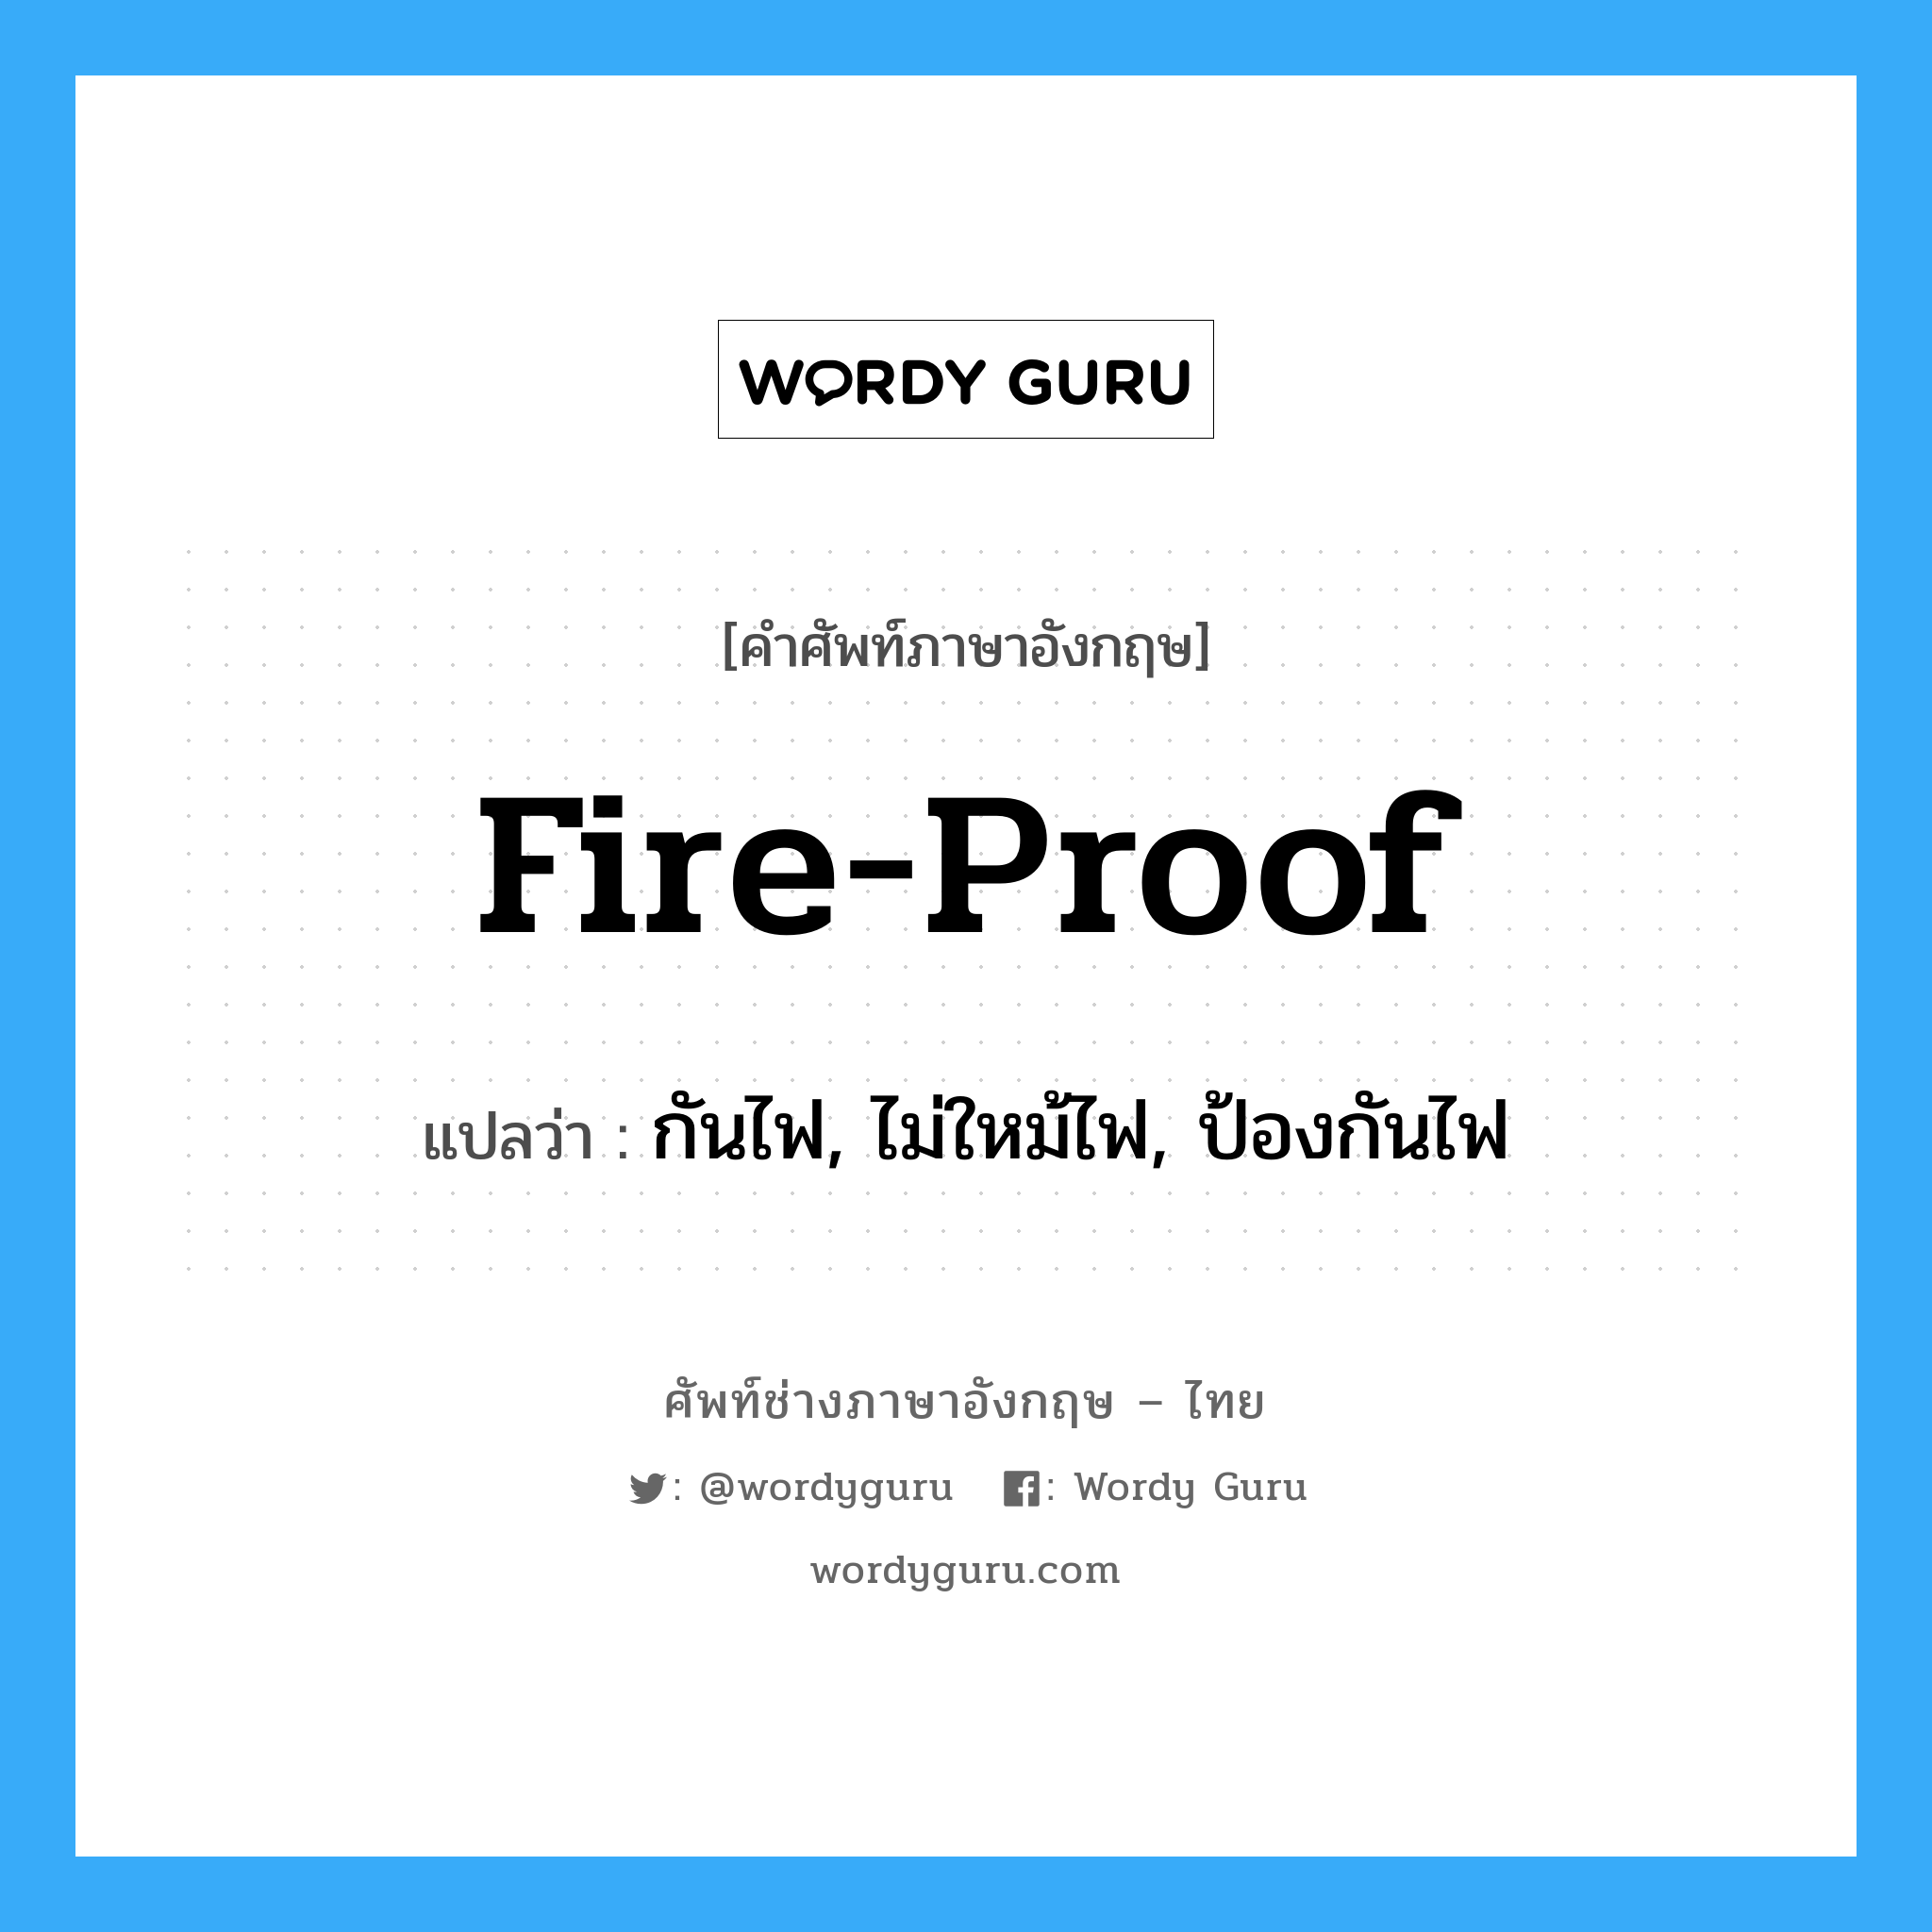 กันไฟ, ไม่ใหม้ไฟ, ป้องกันไฟ ภาษาอังกฤษ?, คำศัพท์ช่างภาษาอังกฤษ - ไทย กันไฟ, ไม่ใหม้ไฟ, ป้องกันไฟ คำศัพท์ภาษาอังกฤษ กันไฟ, ไม่ใหม้ไฟ, ป้องกันไฟ แปลว่า fire-proof